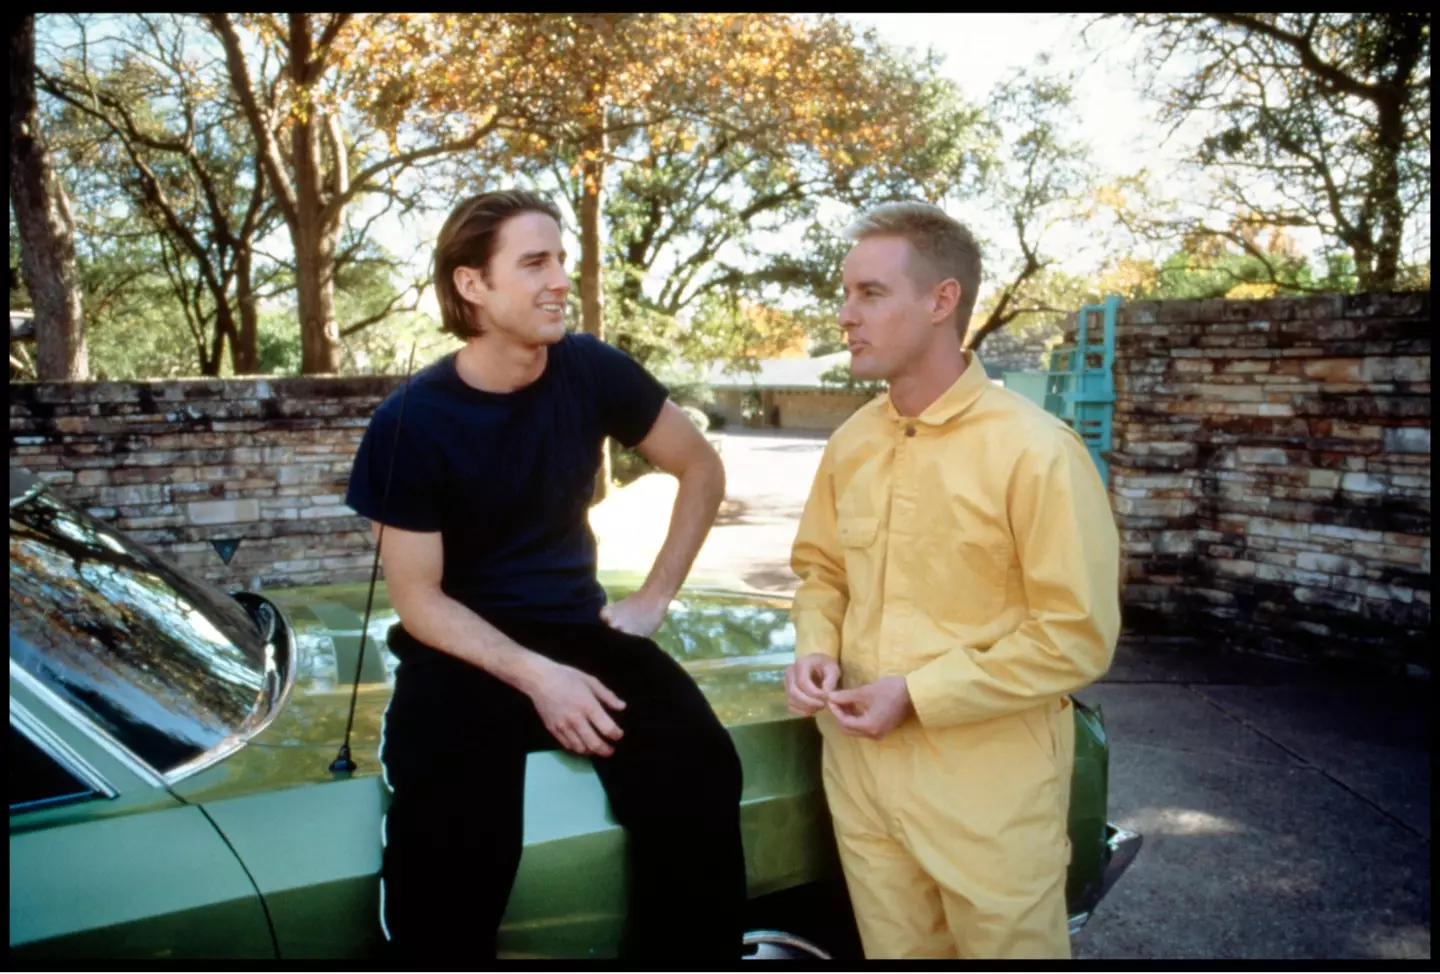 Owen and Luke in 1996 Wes Anderson movie, Bottle Rocket.